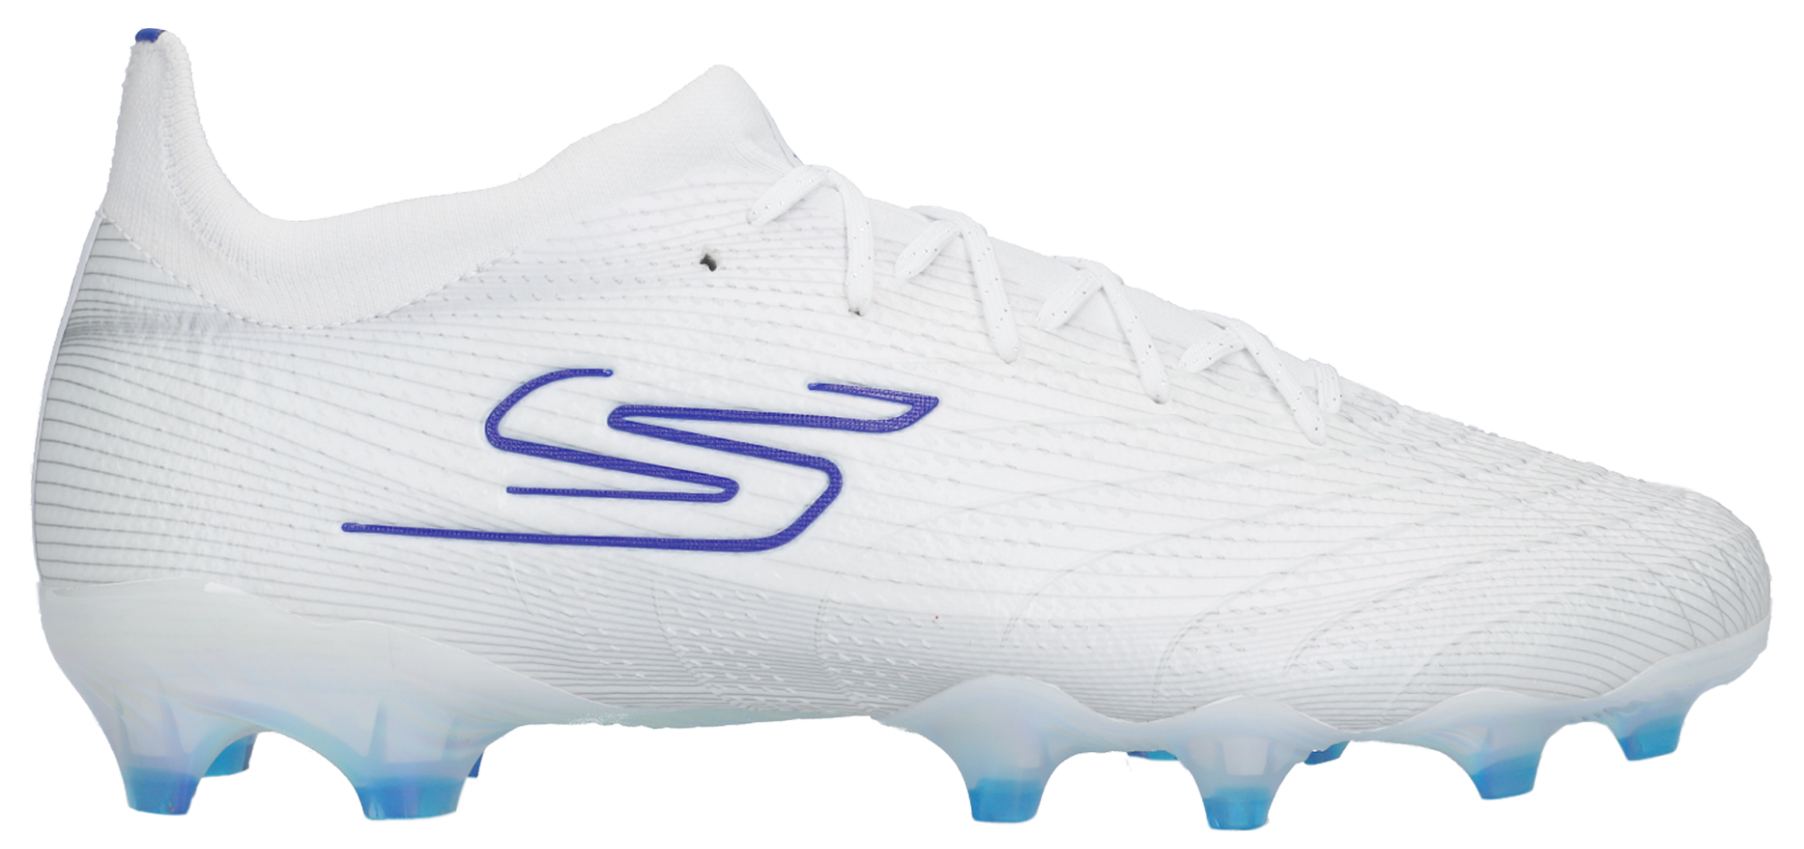 Ποδοσφαιρικά παπούτσια Skechers SKX 01 Low FG